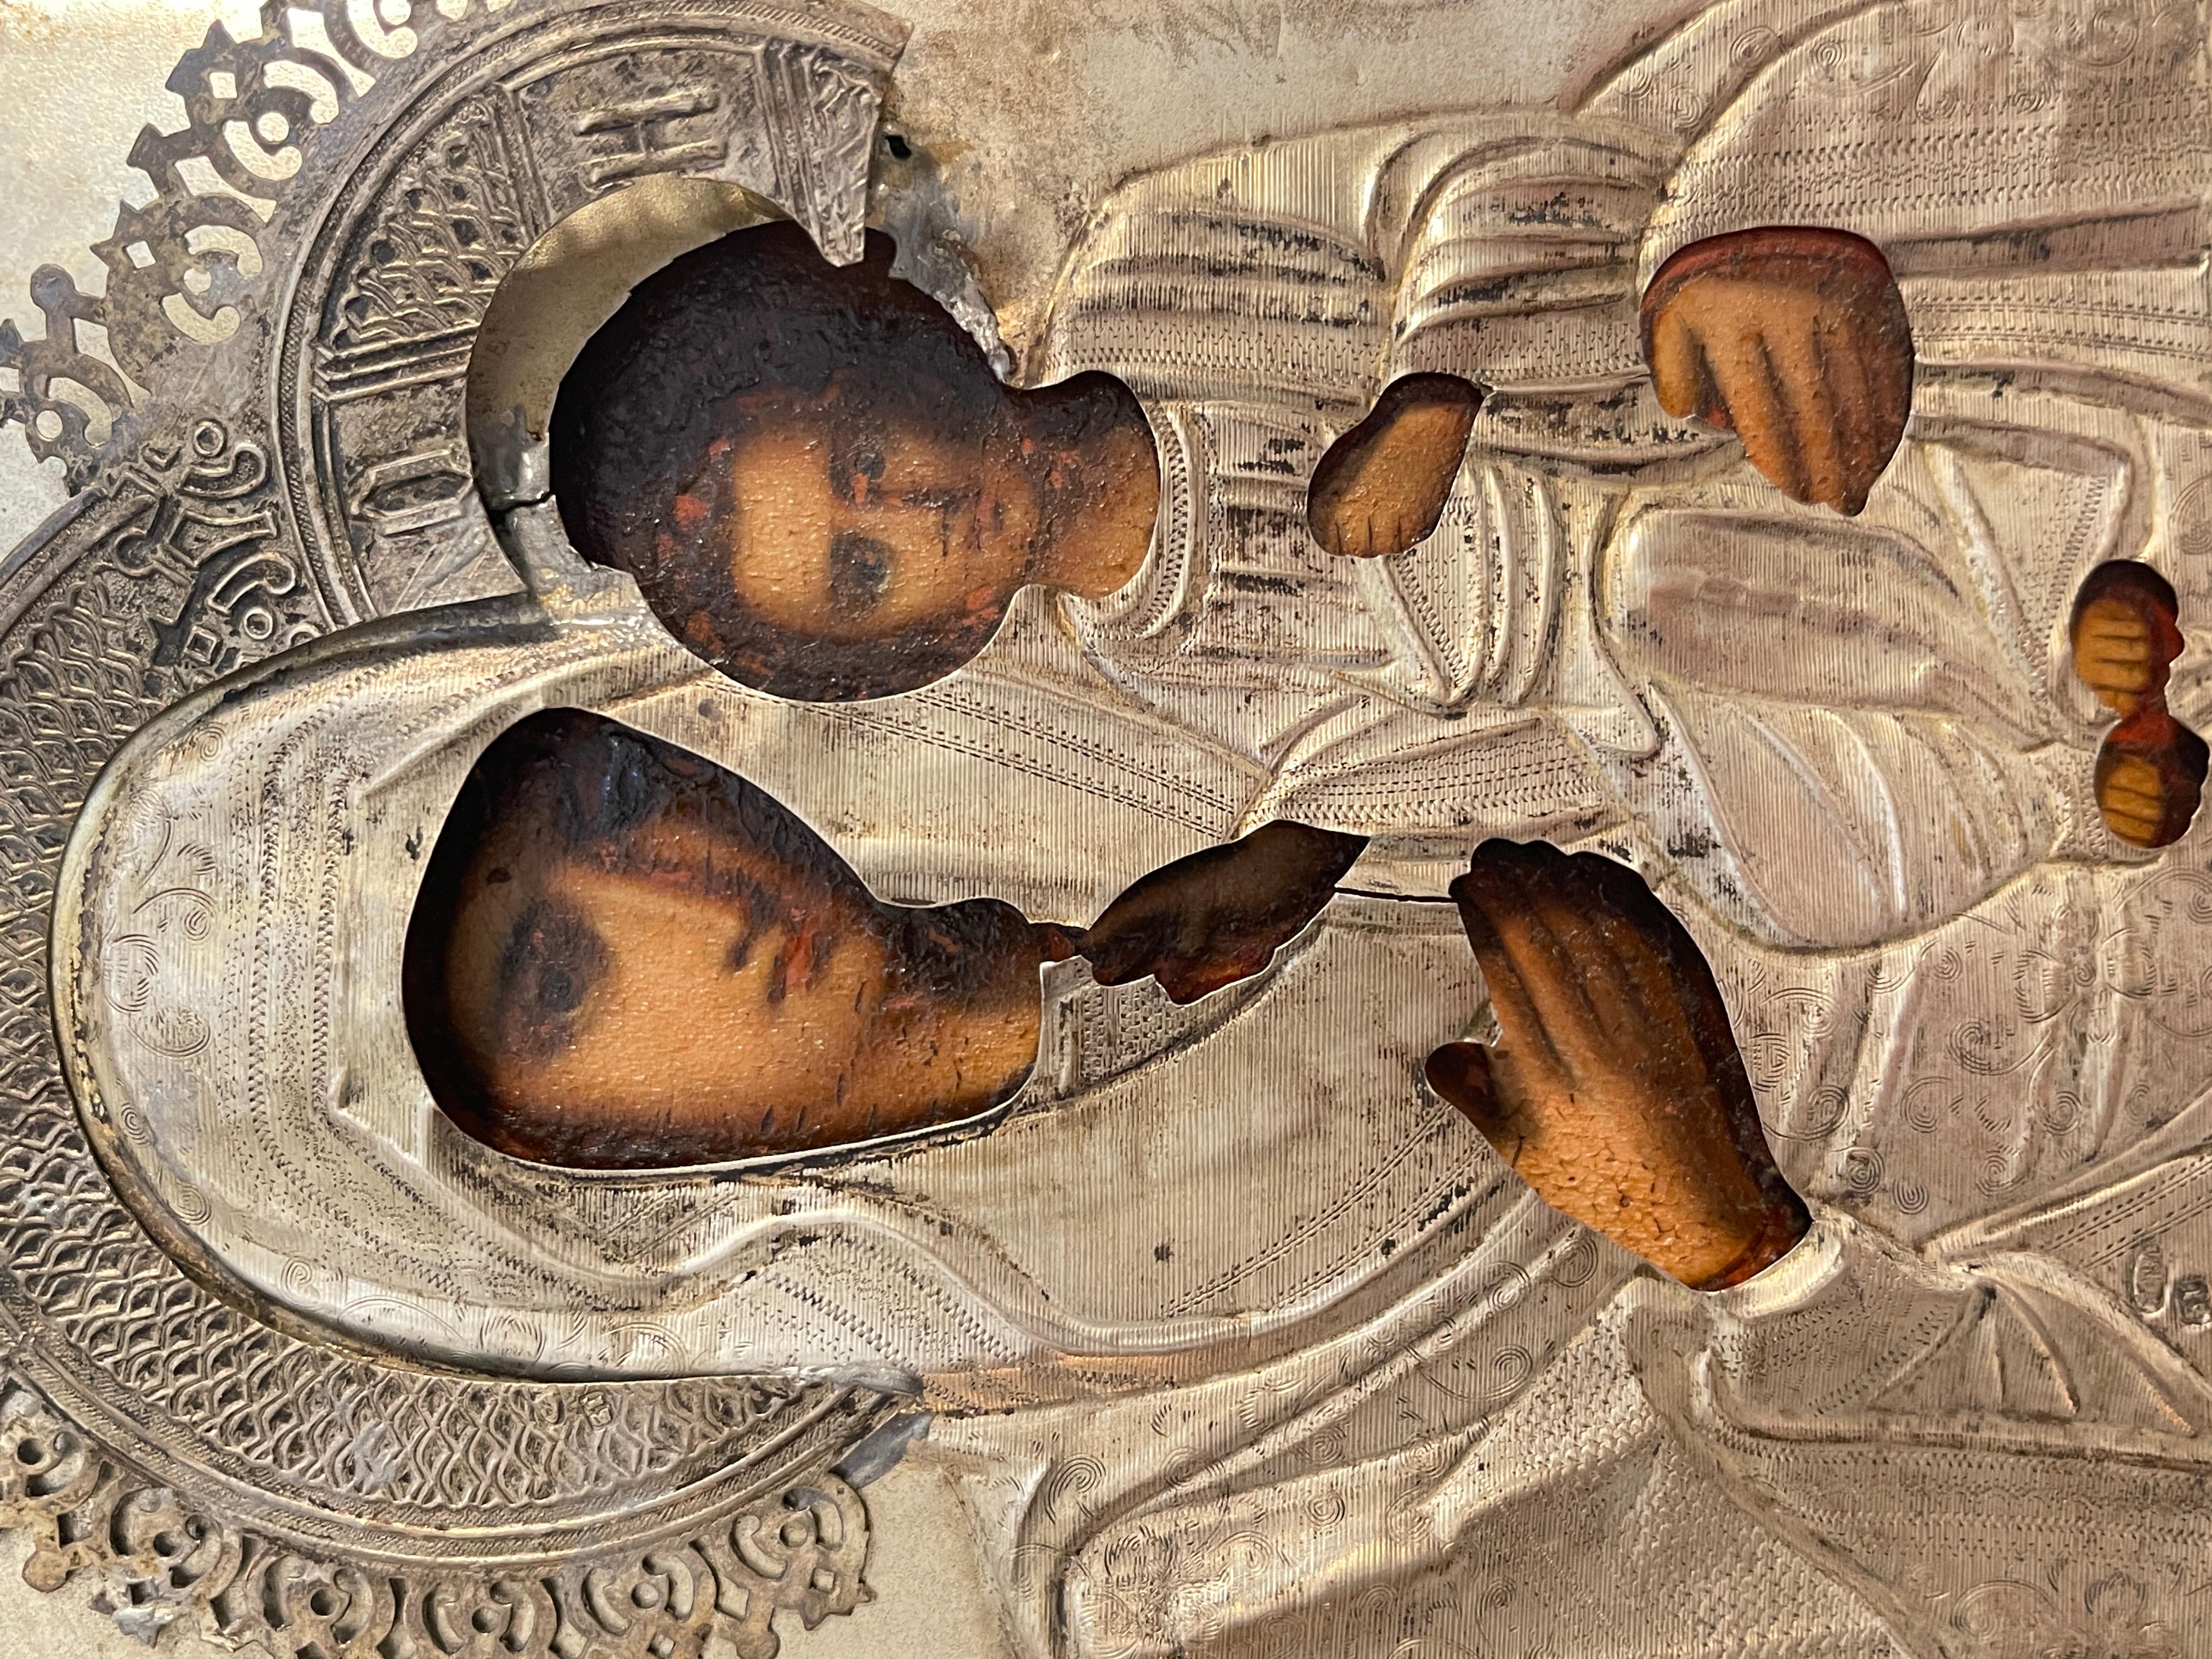 Antike Ikone von hoher Kunstfertigkeit aus dem 19. Jahrhundert, russisch. Die Ikone stellt die Madonna mit dem Kind in der Mitte dar, bedeckt mit einer silbernen Riza.
In gutem Zustand, wie auf den Fotos zu sehen, einige Mängel und altersbedingte